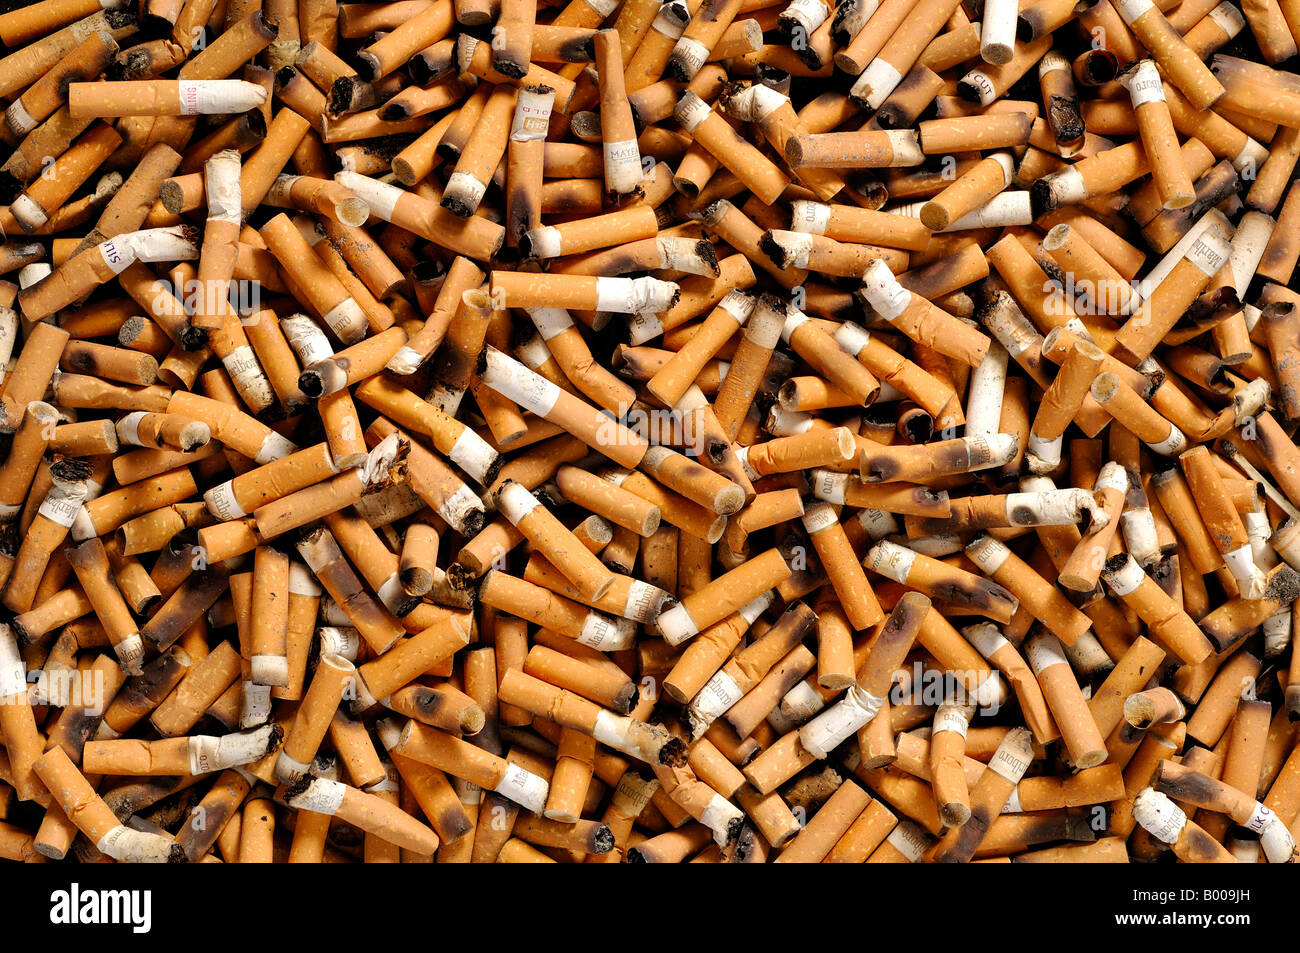 Cigarette butts Stock Photo